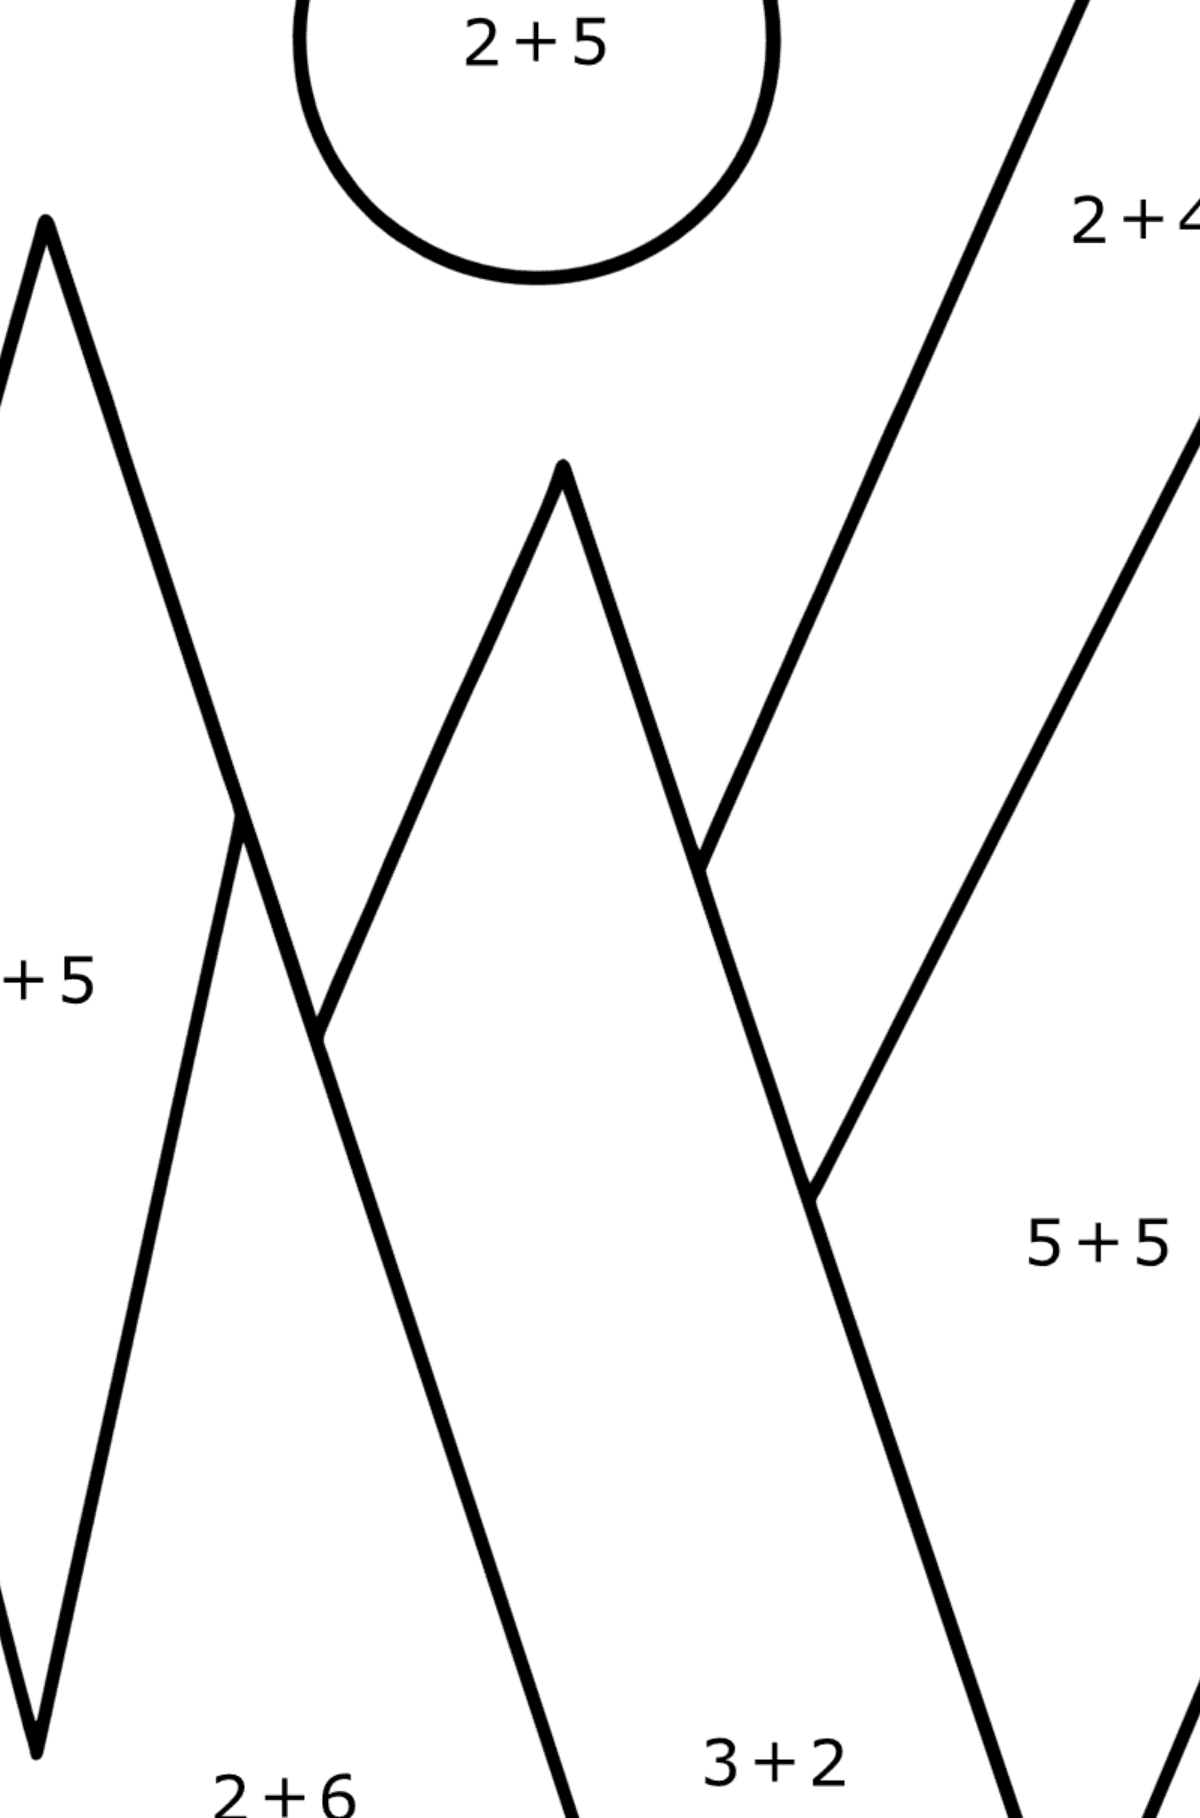 Omalovánka geometrické tvary - hory - Matematická Omalovánka - Sčítání pro děti